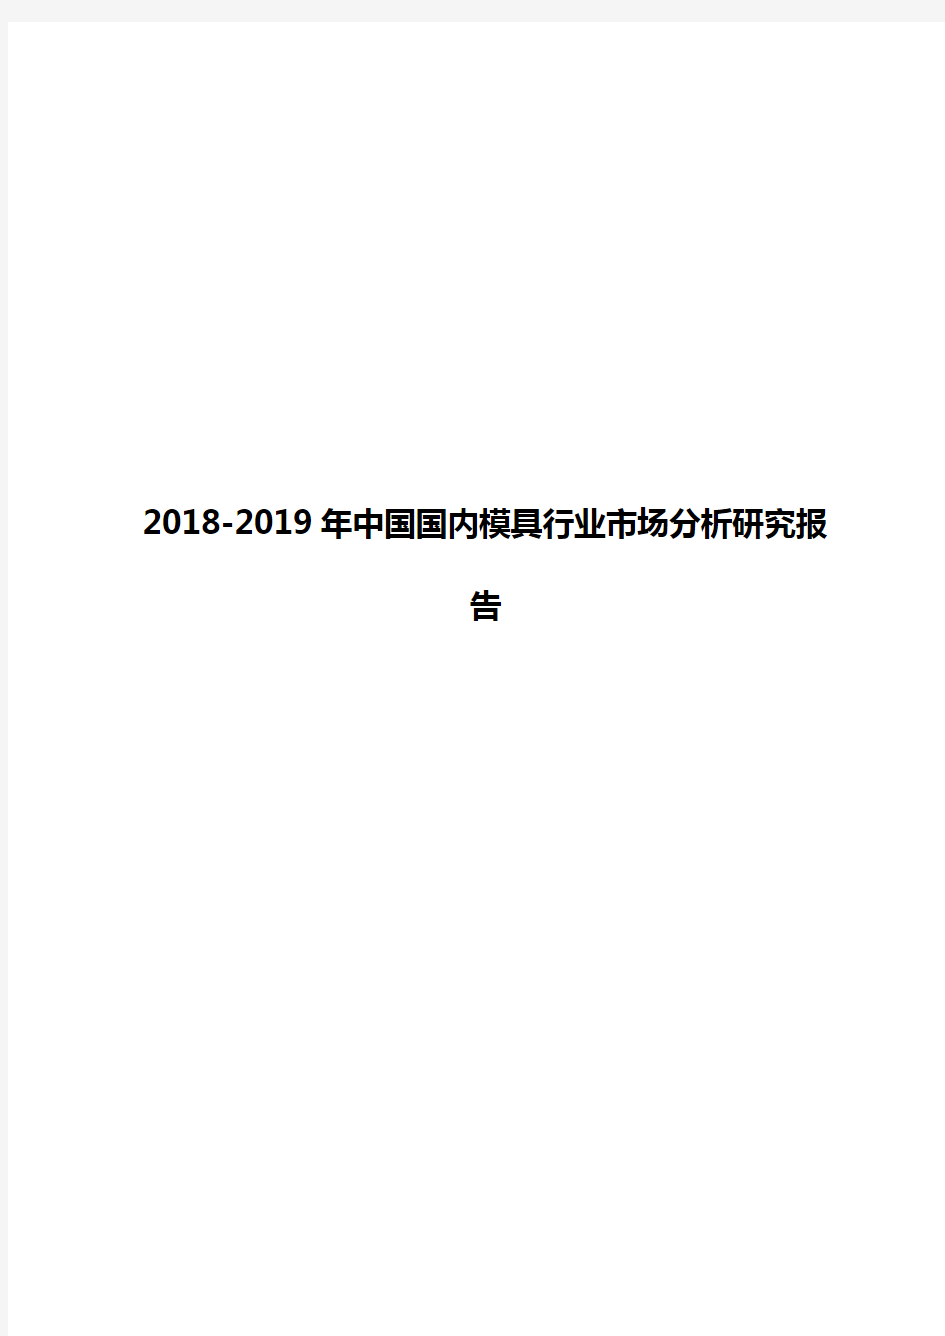 2018-2019年中国国内模具行业市场分析研究报告